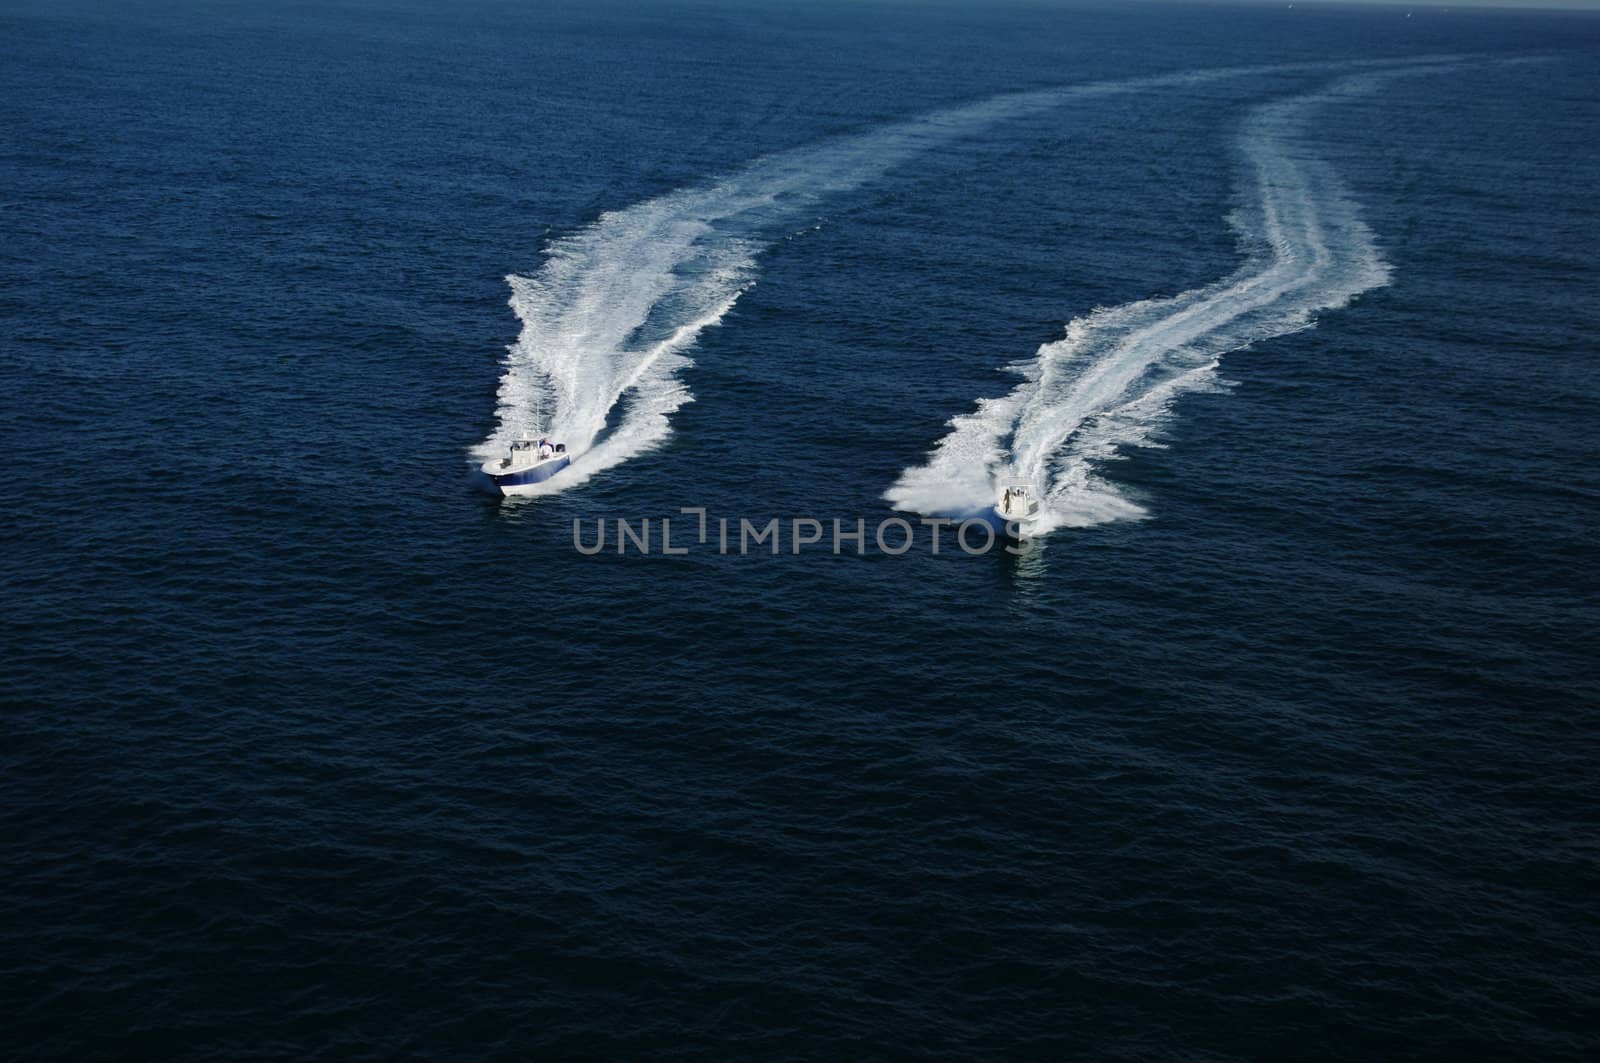 Two boats racing in Atlantic Ocean